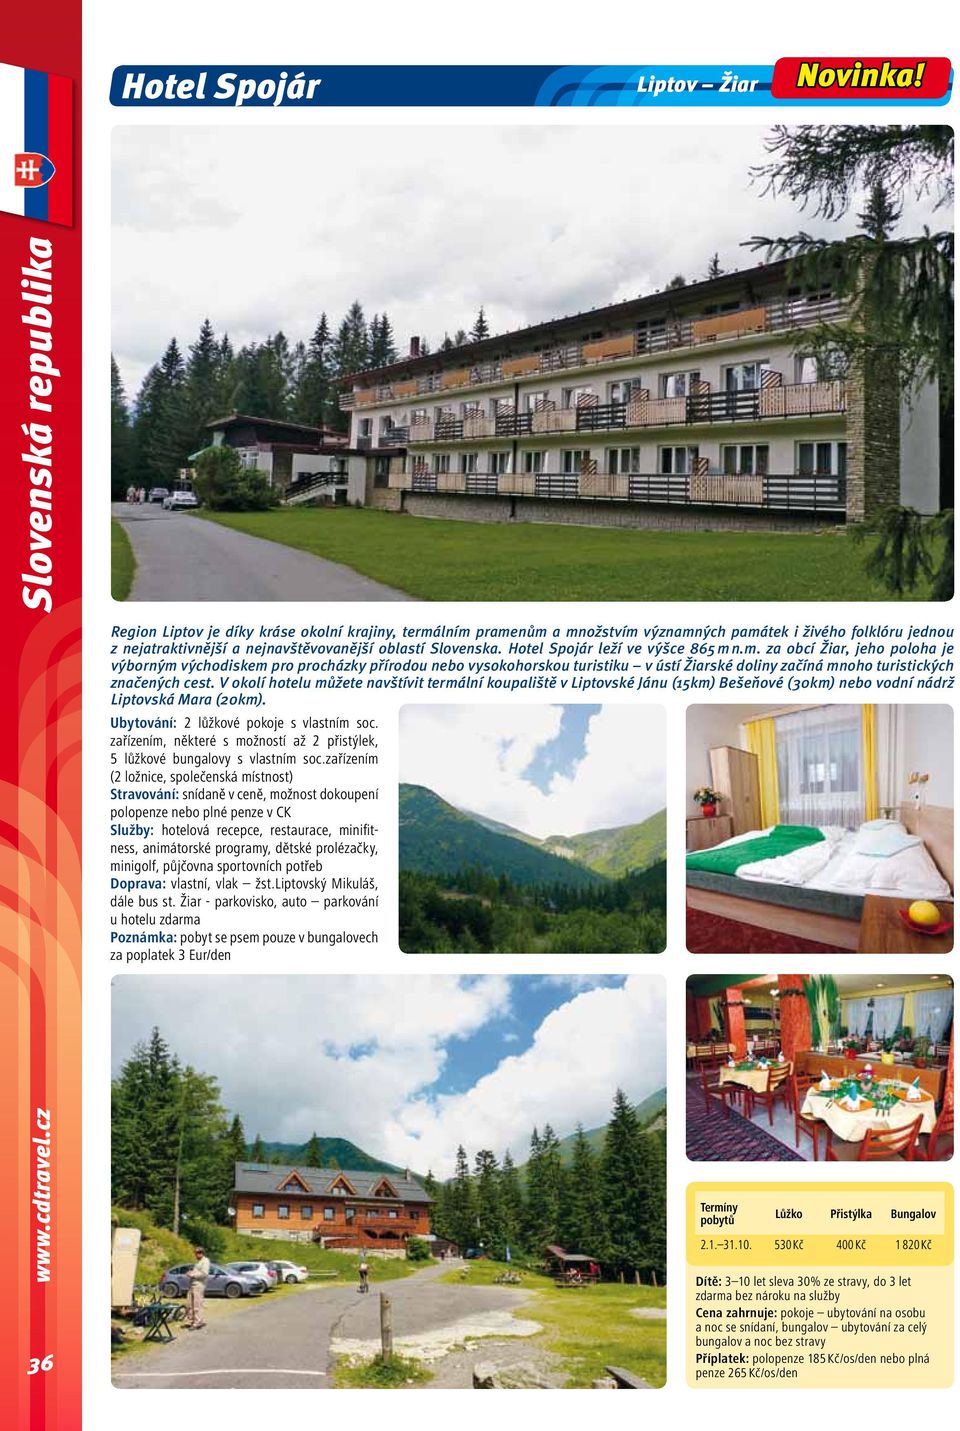 Hotel Spojár leží ve výšce 865 m n.m. za obcí Žiar, jeho poloha je výborným východiskem pro procházky přírodou nebo vysokohorskou turistiku v ústí Žiarské doliny začíná mnoho turistických značených cest.